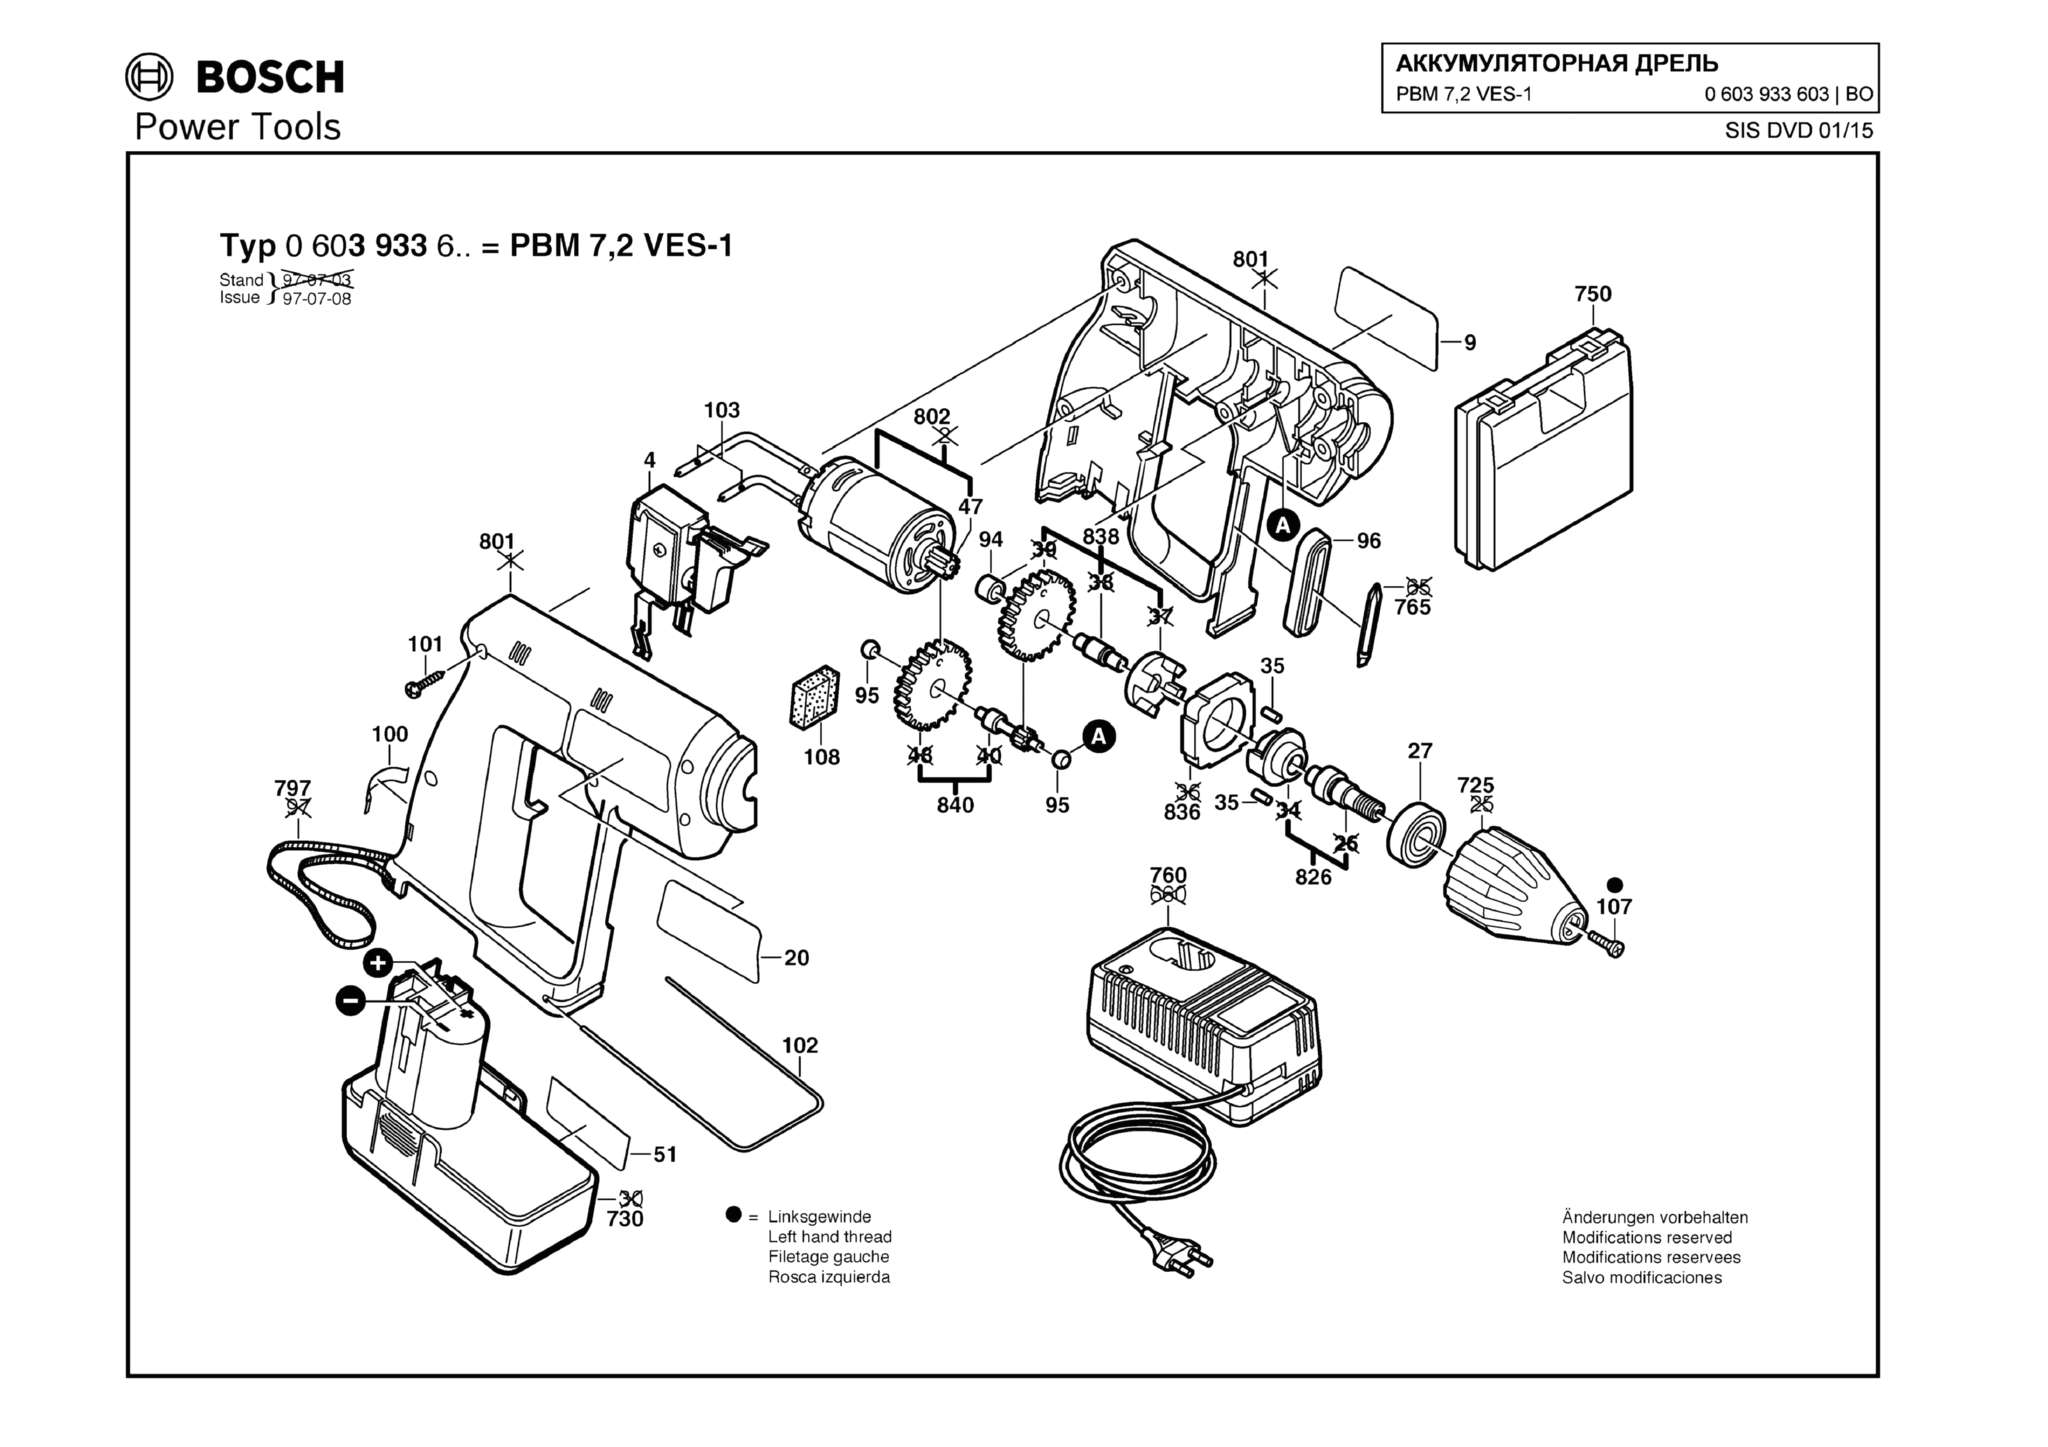 Запчасти, схема и деталировка Bosch PBM 7,2 VES-1 (ТИП 0603933603)